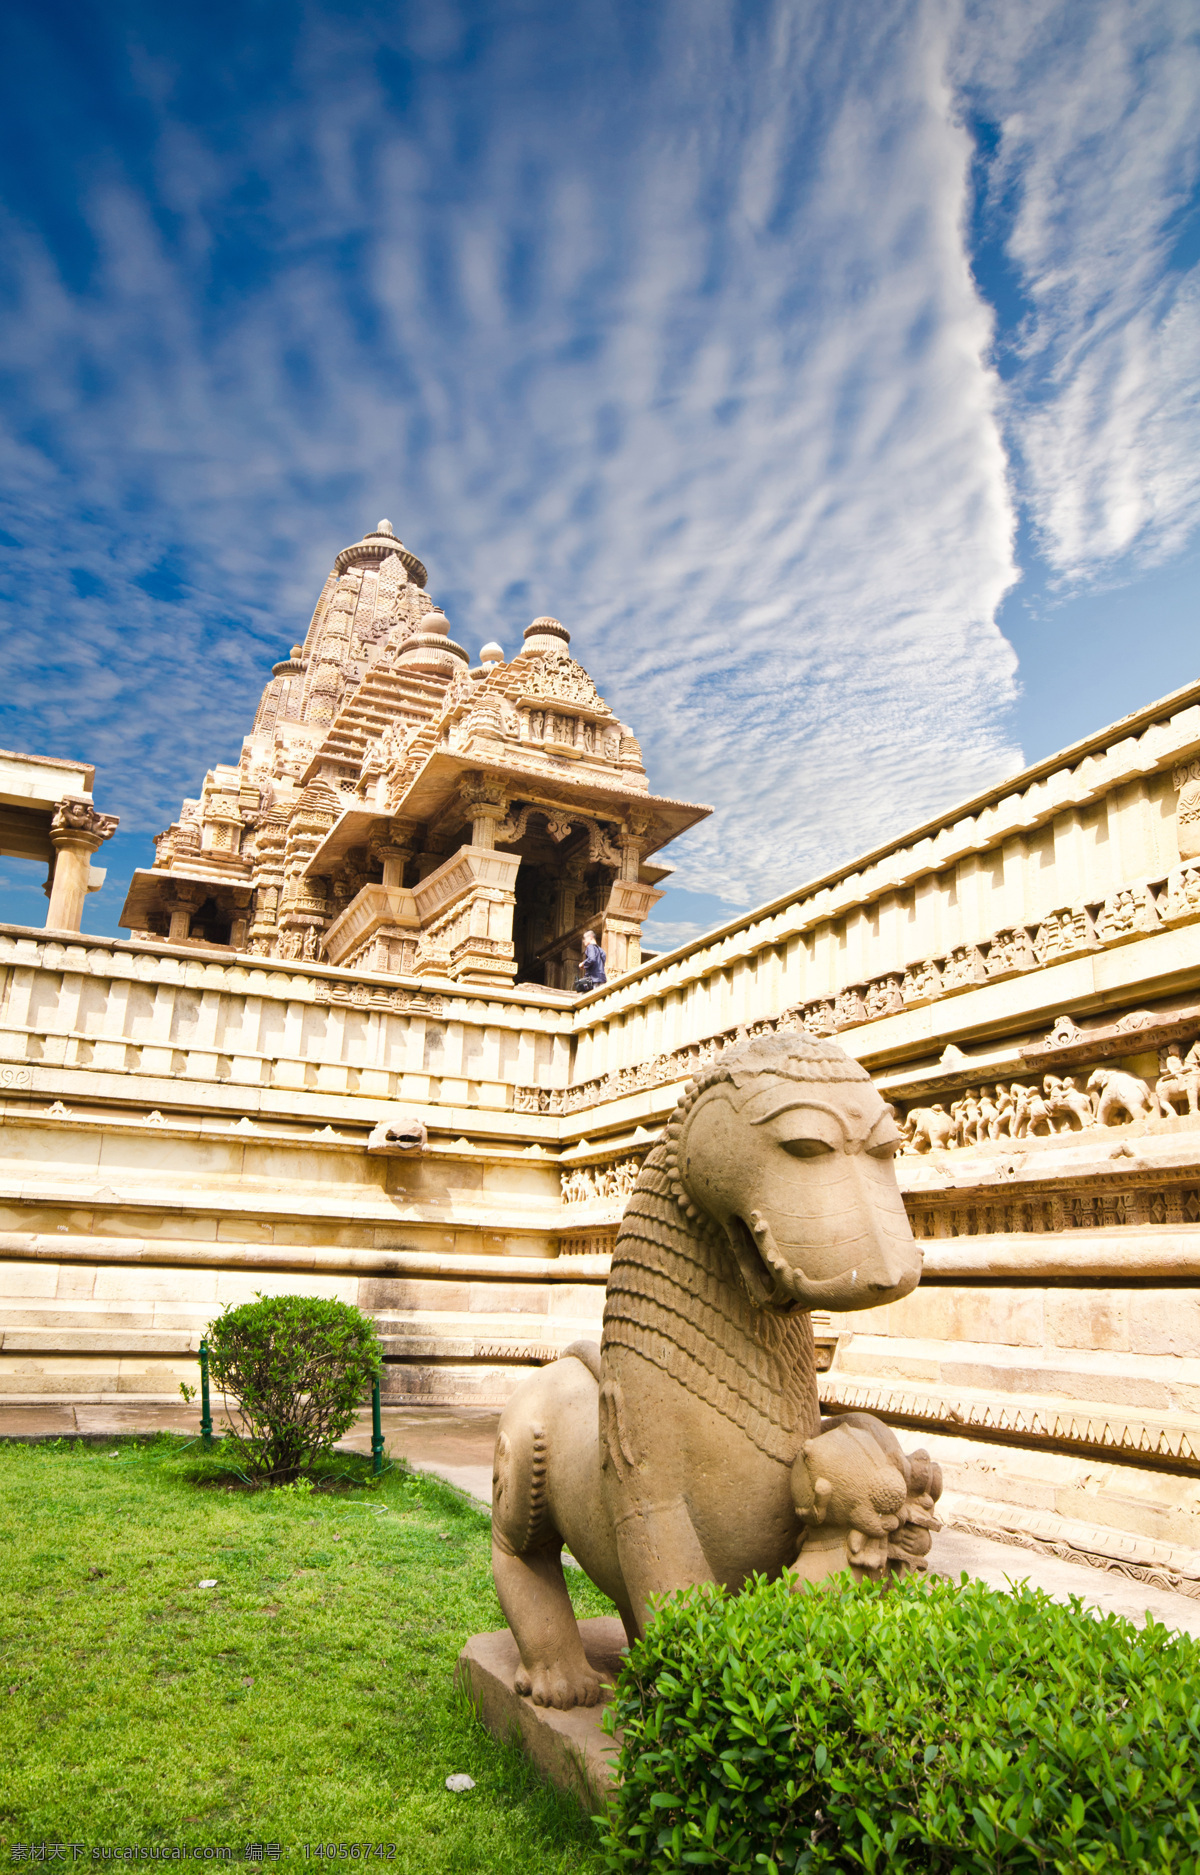 克 久 拉 霍 寺庙 石像 克久拉霍寺 雕塑 印度寺庙 建筑风景 印度旅游景点 美丽风光 风景摄影 美丽景色 美景 文明古迹 建筑设计 环境家居 白色